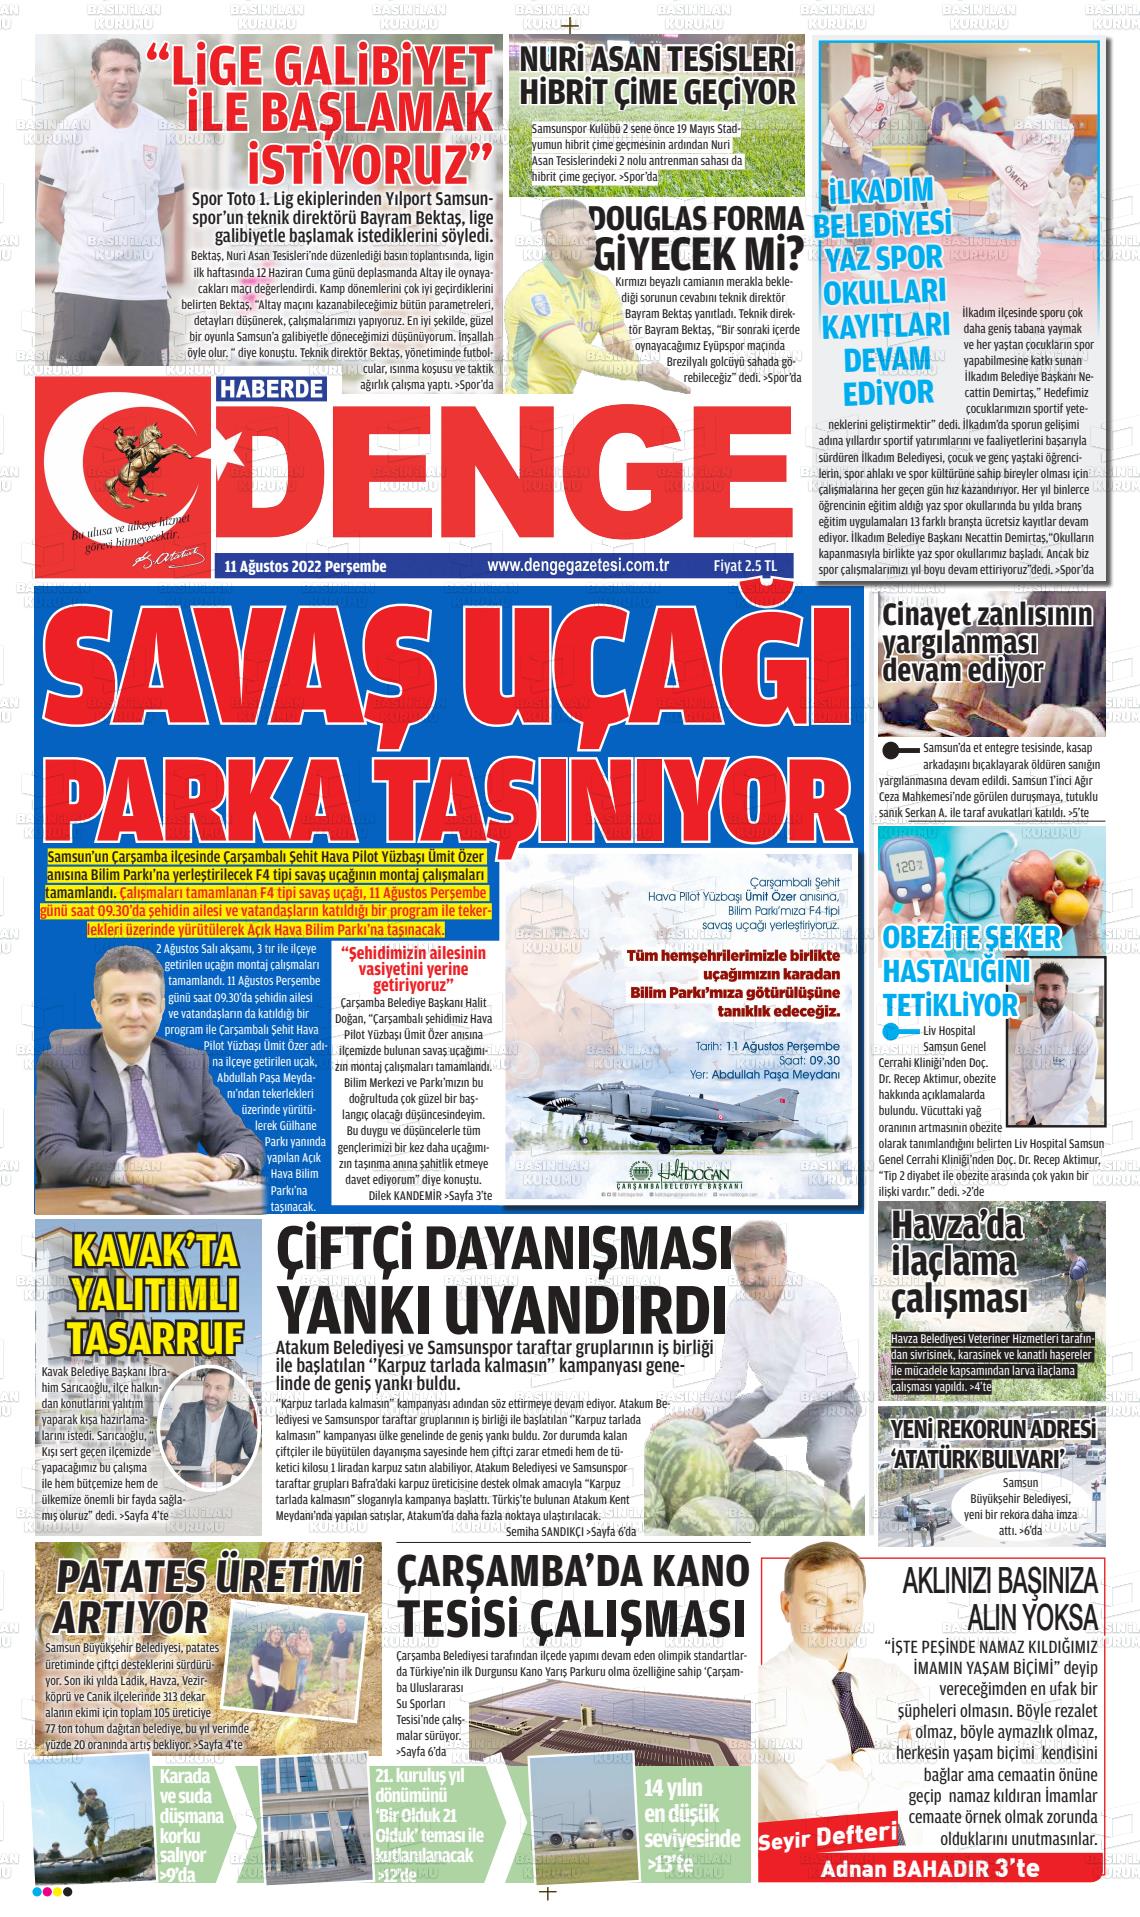 11 Ağustos 2022 Samsun Denge Gazete Manşeti